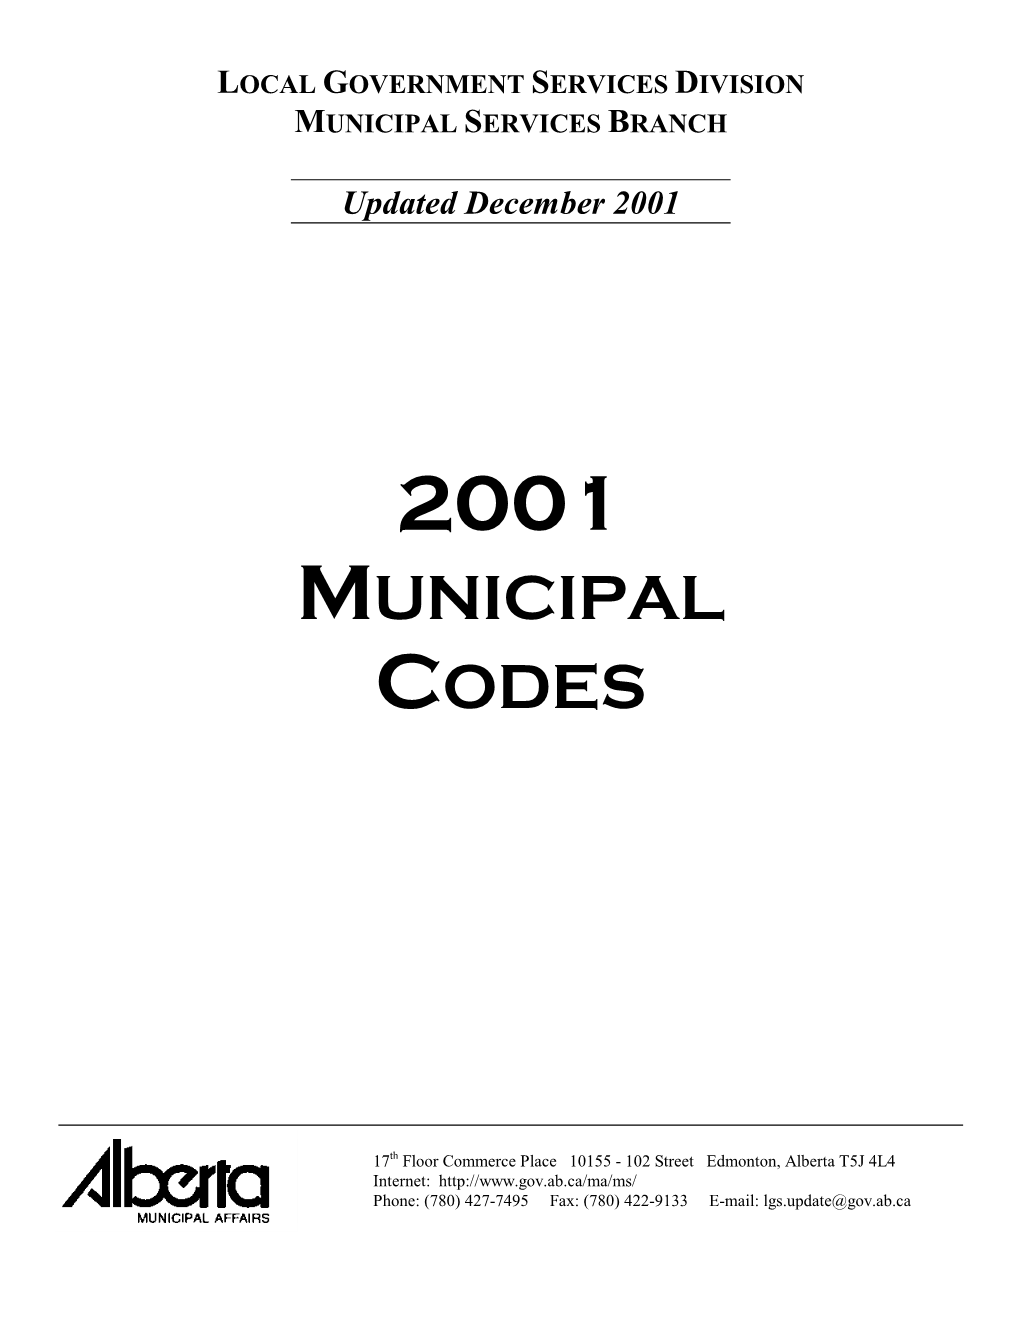 2001 Municipal Codes